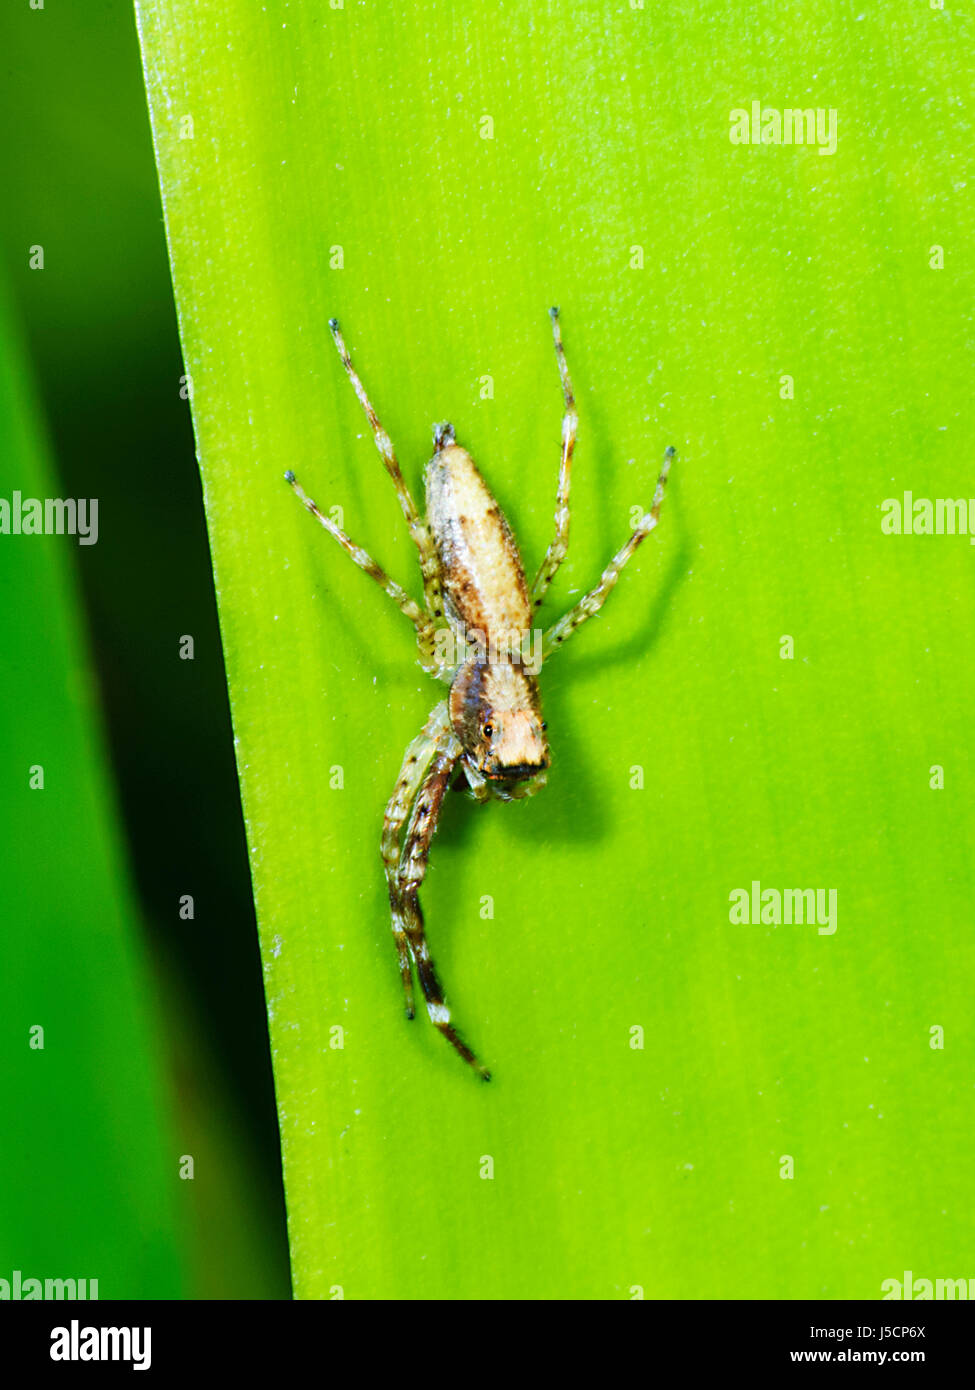 Araignée sauteuse menaçant (Helpis minitabunda) avec deux pattes avant, New South Wales, NSW, Australie Banque D'Images